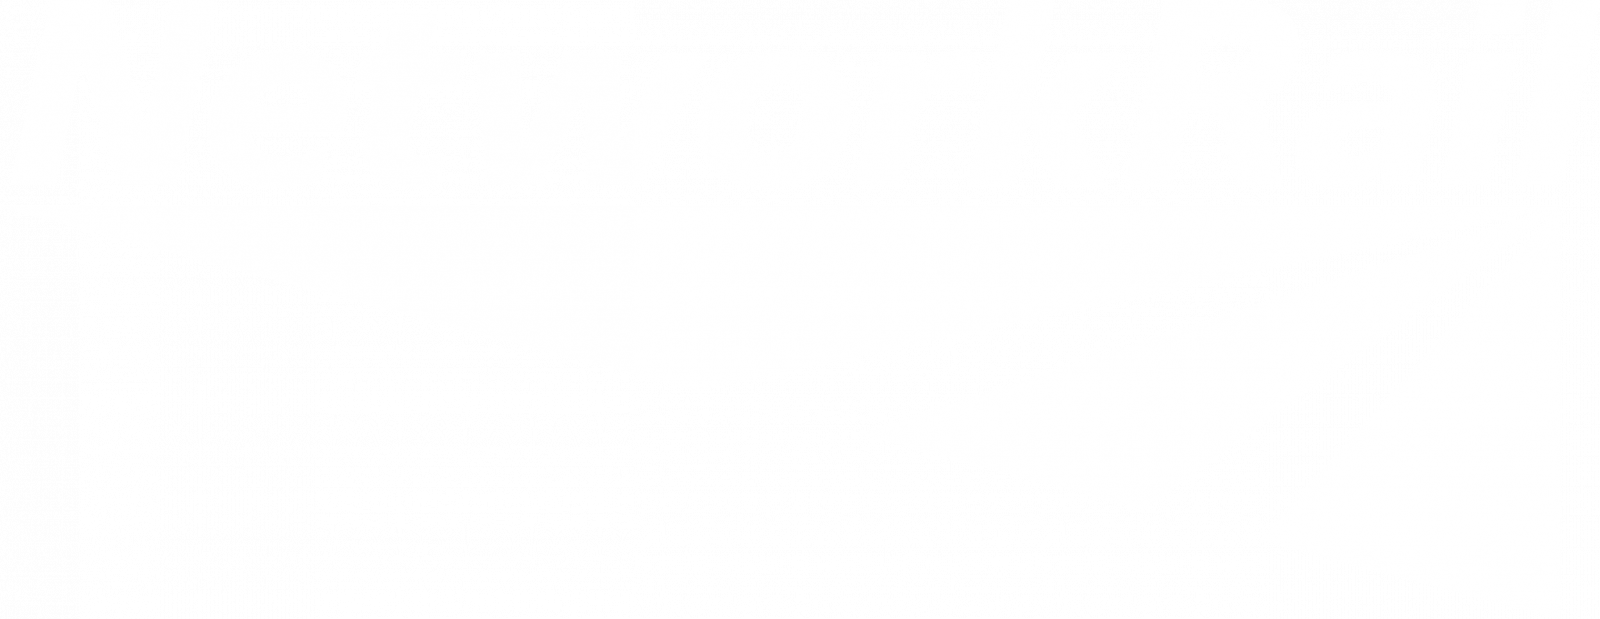 Network Rail logo - white